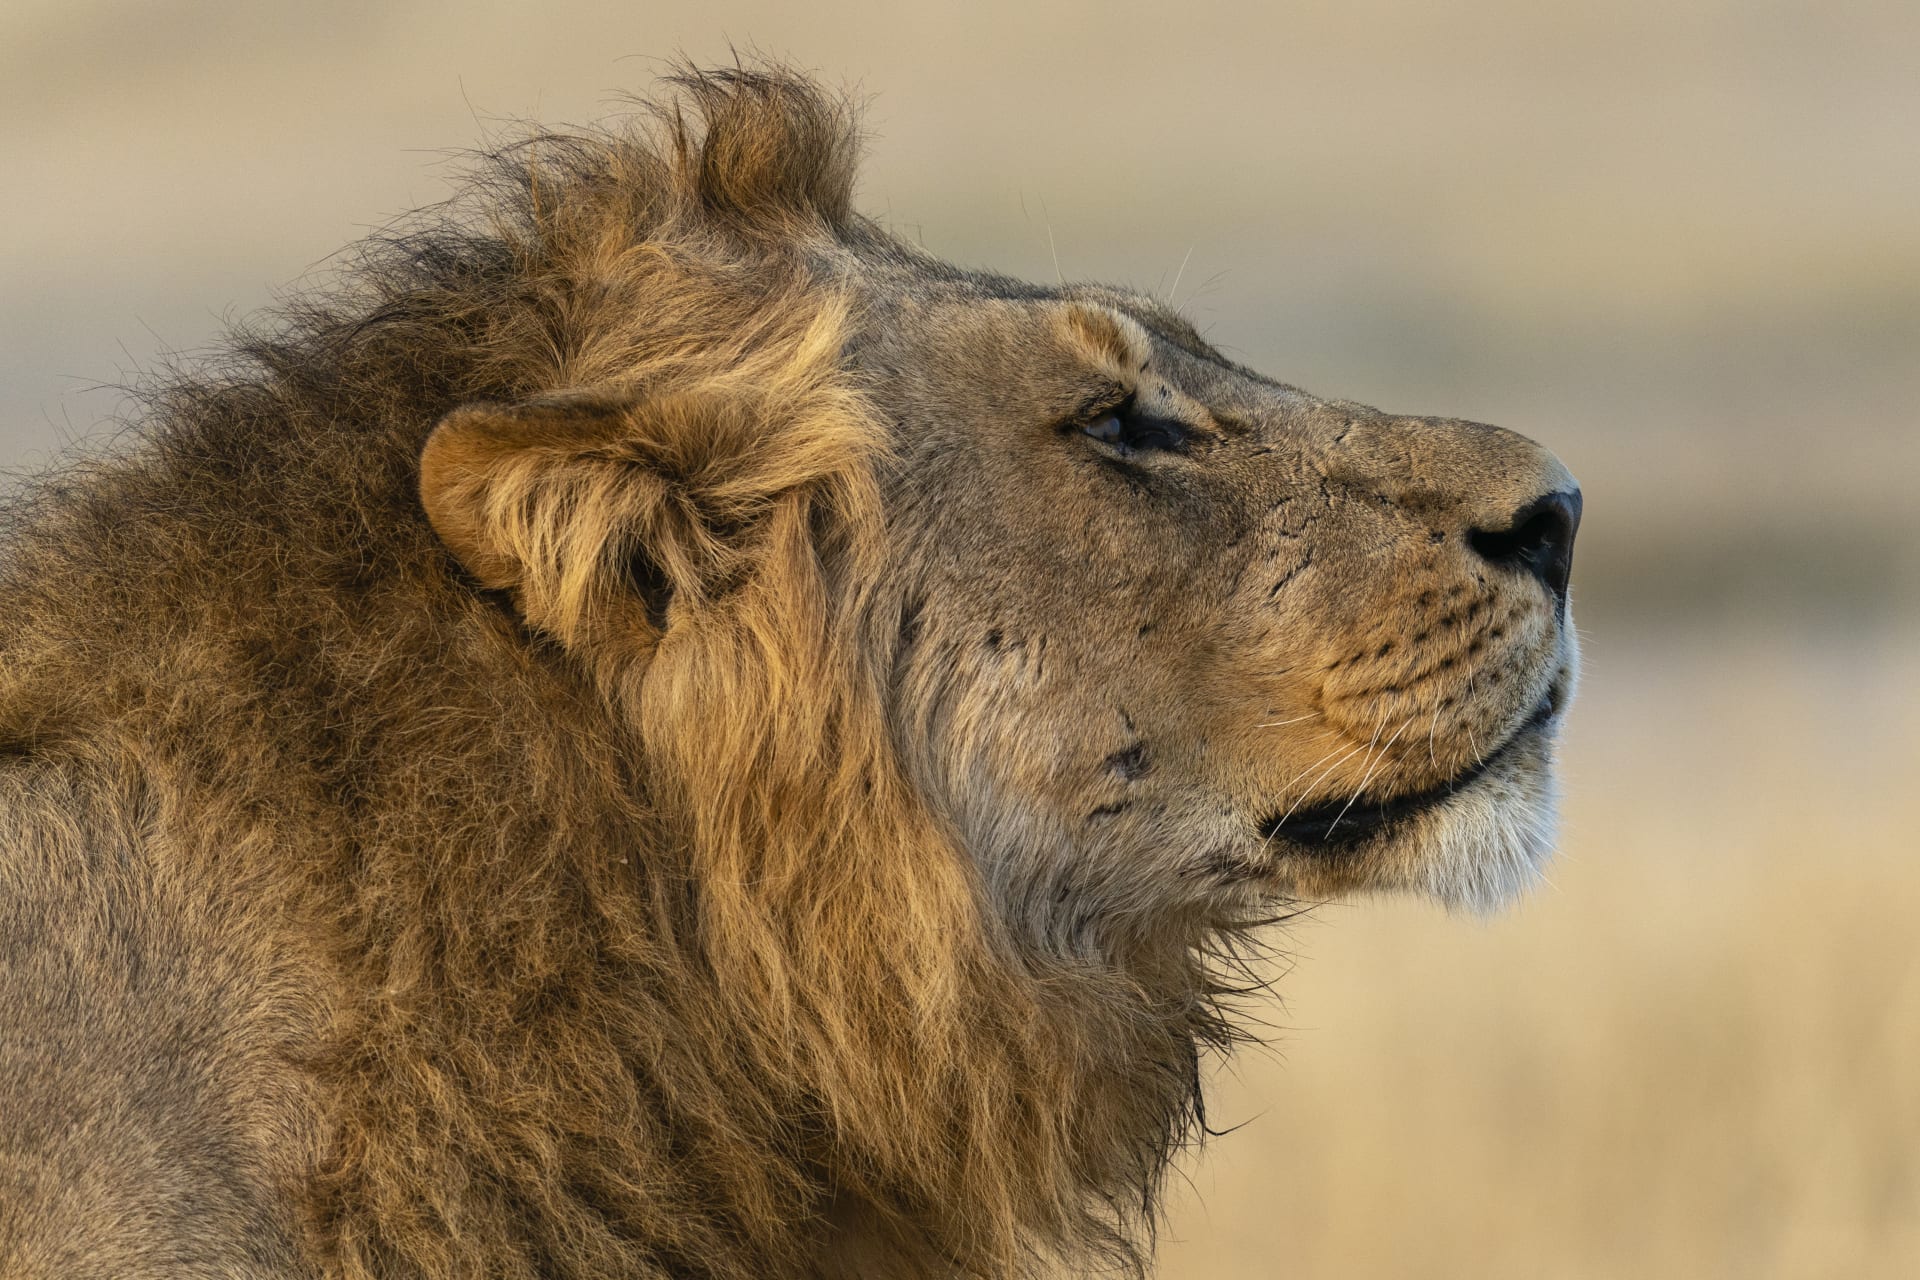 Průměrná délka života lvů ve volné přírodě je asi 13 let, i když v zajetí mohou žít mnohem déle. (Ilustrační foto)